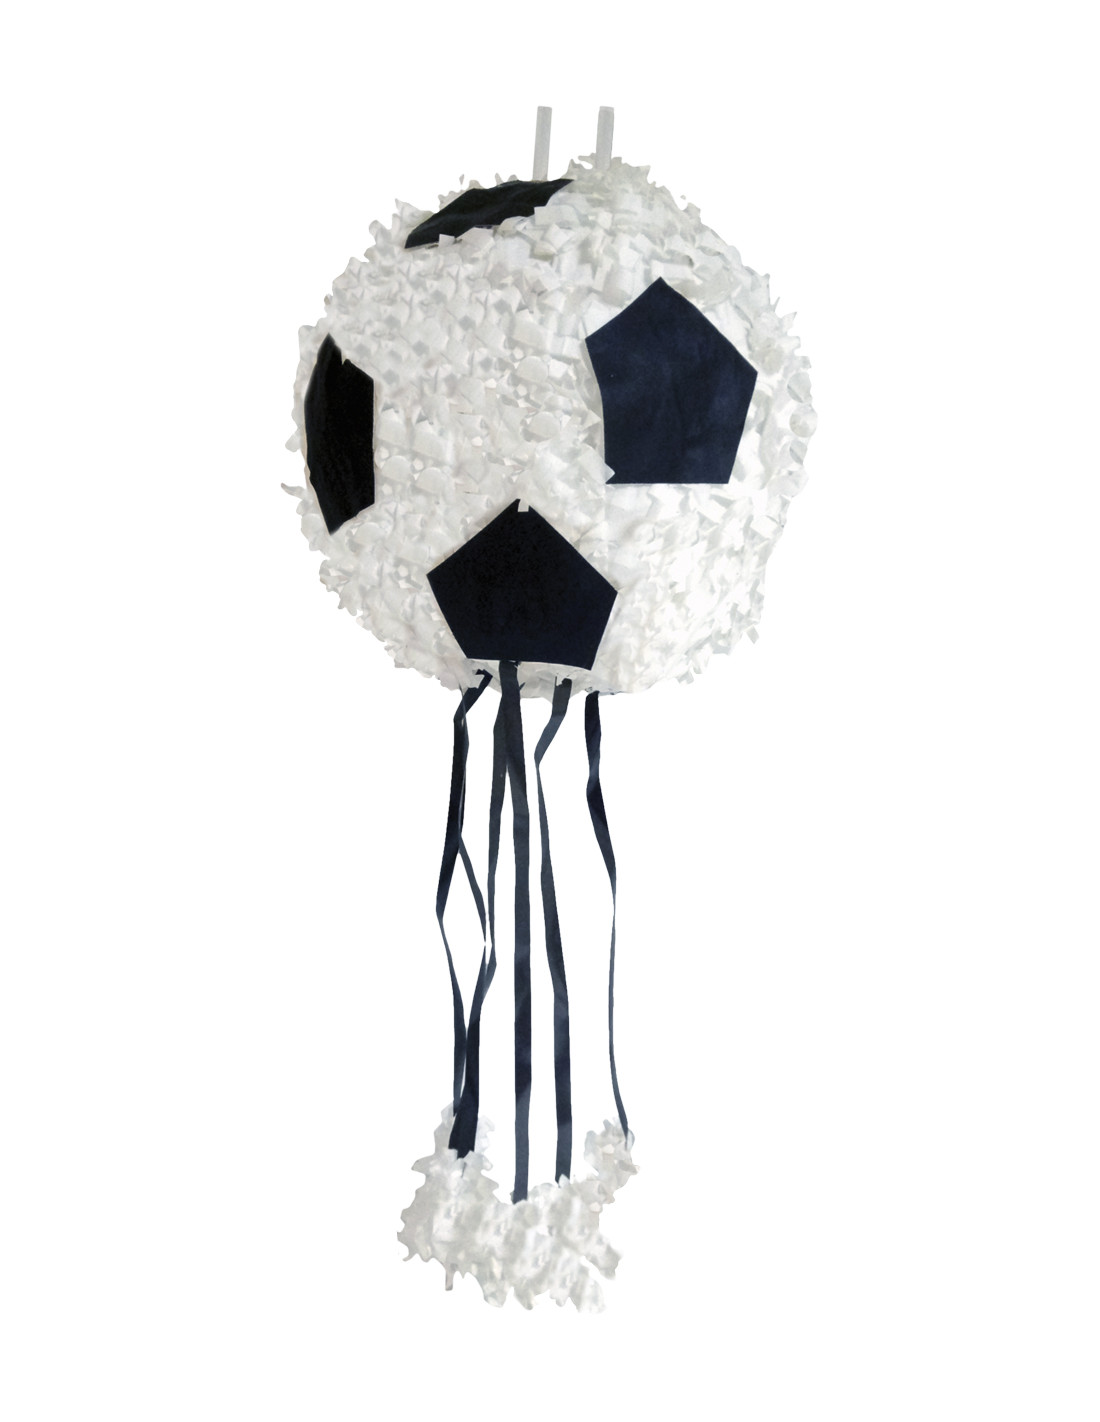 Piñata pelota de fútbol, Pelota de fútbol con cintas